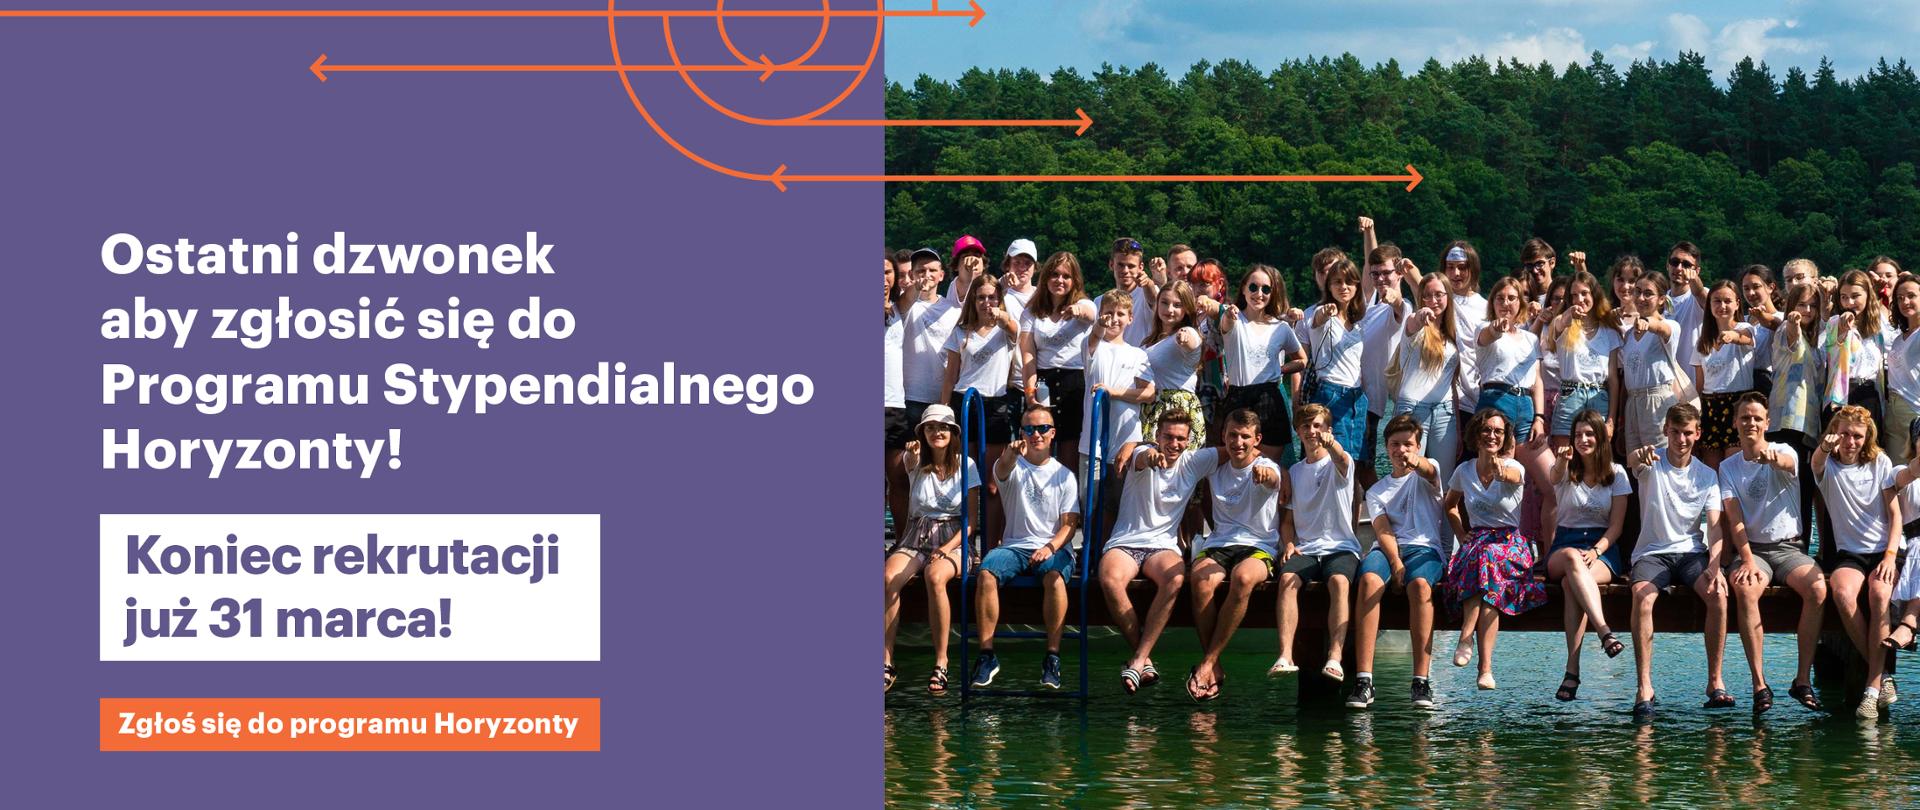 Baner informujący, że do dnia 31 marca można zgłosić się do Programu Stypendialnego Horyzonty. Na banerze jest też zdjęcie młodzieży w grupie nad jeziorem.